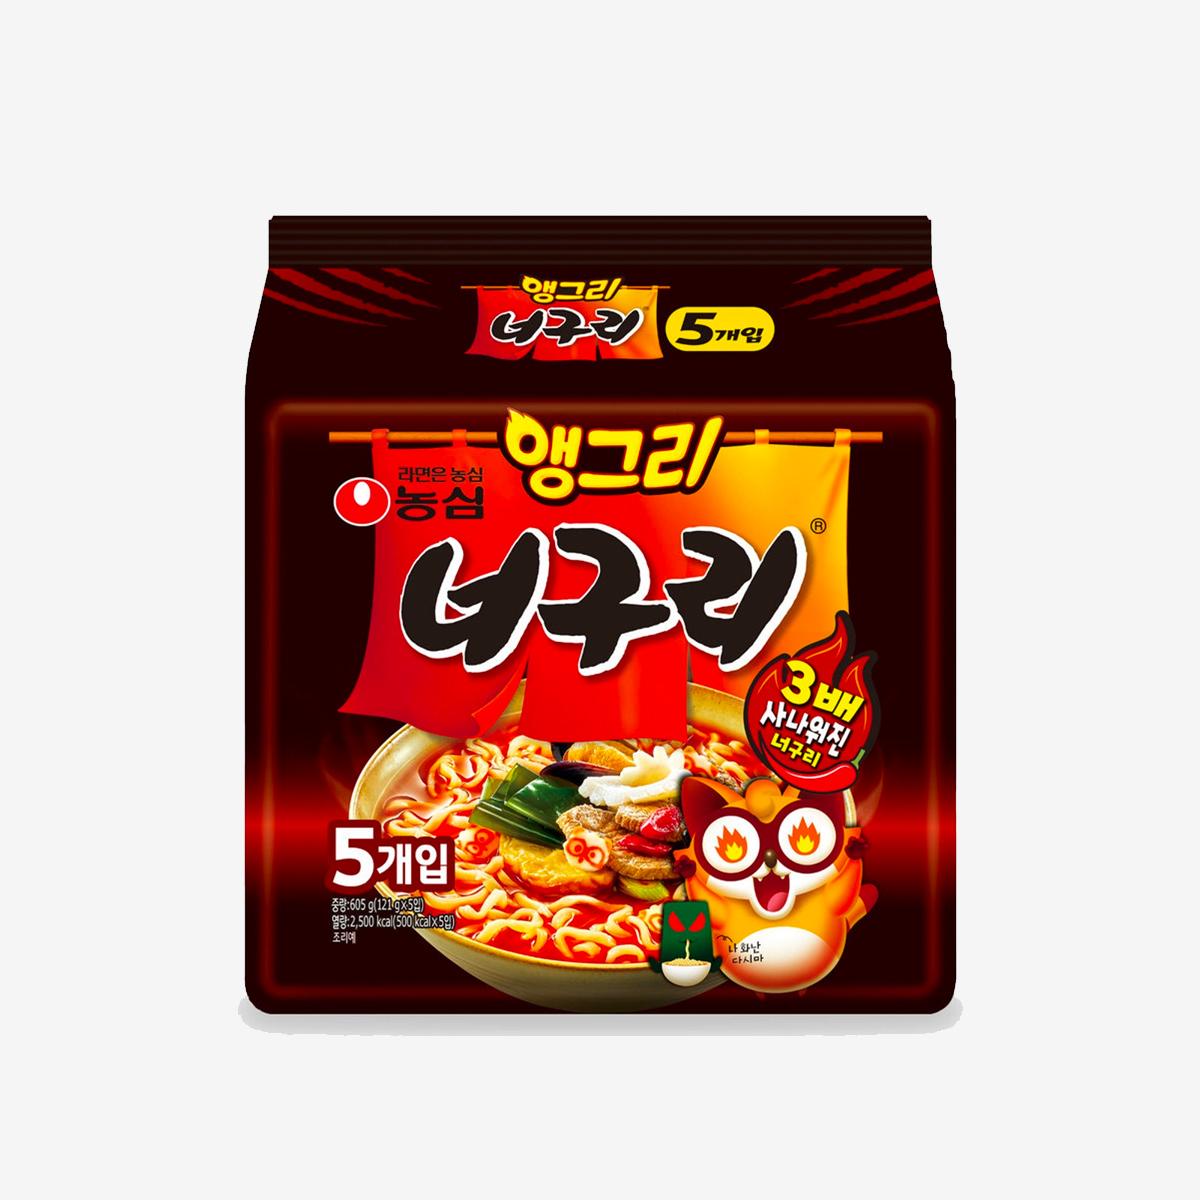 korean brand nongshim's angry neoguri ramen pack